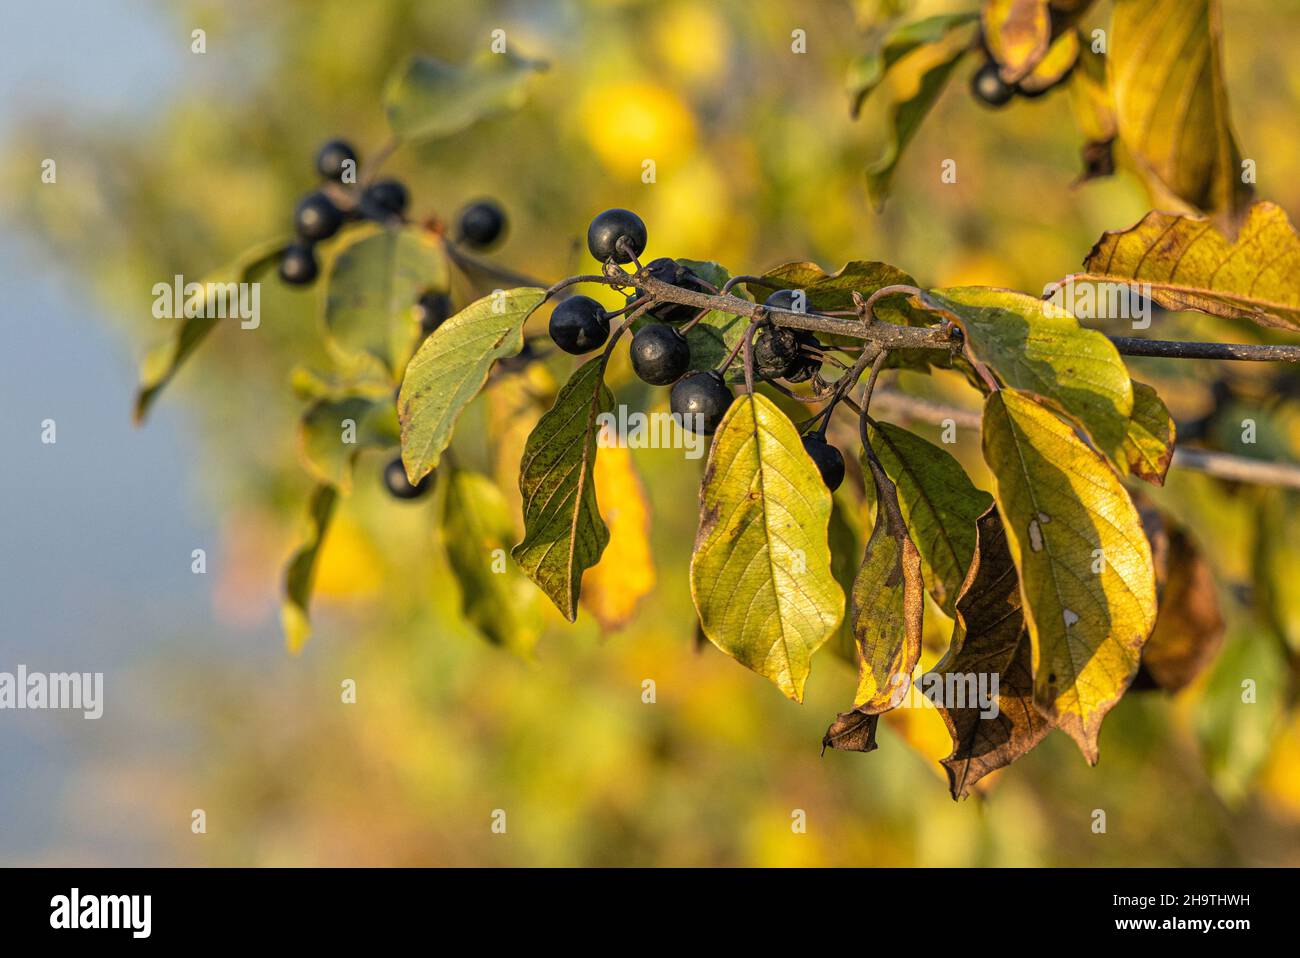 Argousier, argousier brillant (Frangula alnus, Rhamnus frangula), branche de fruits en automne, Allemagne, Bavière Banque D'Images